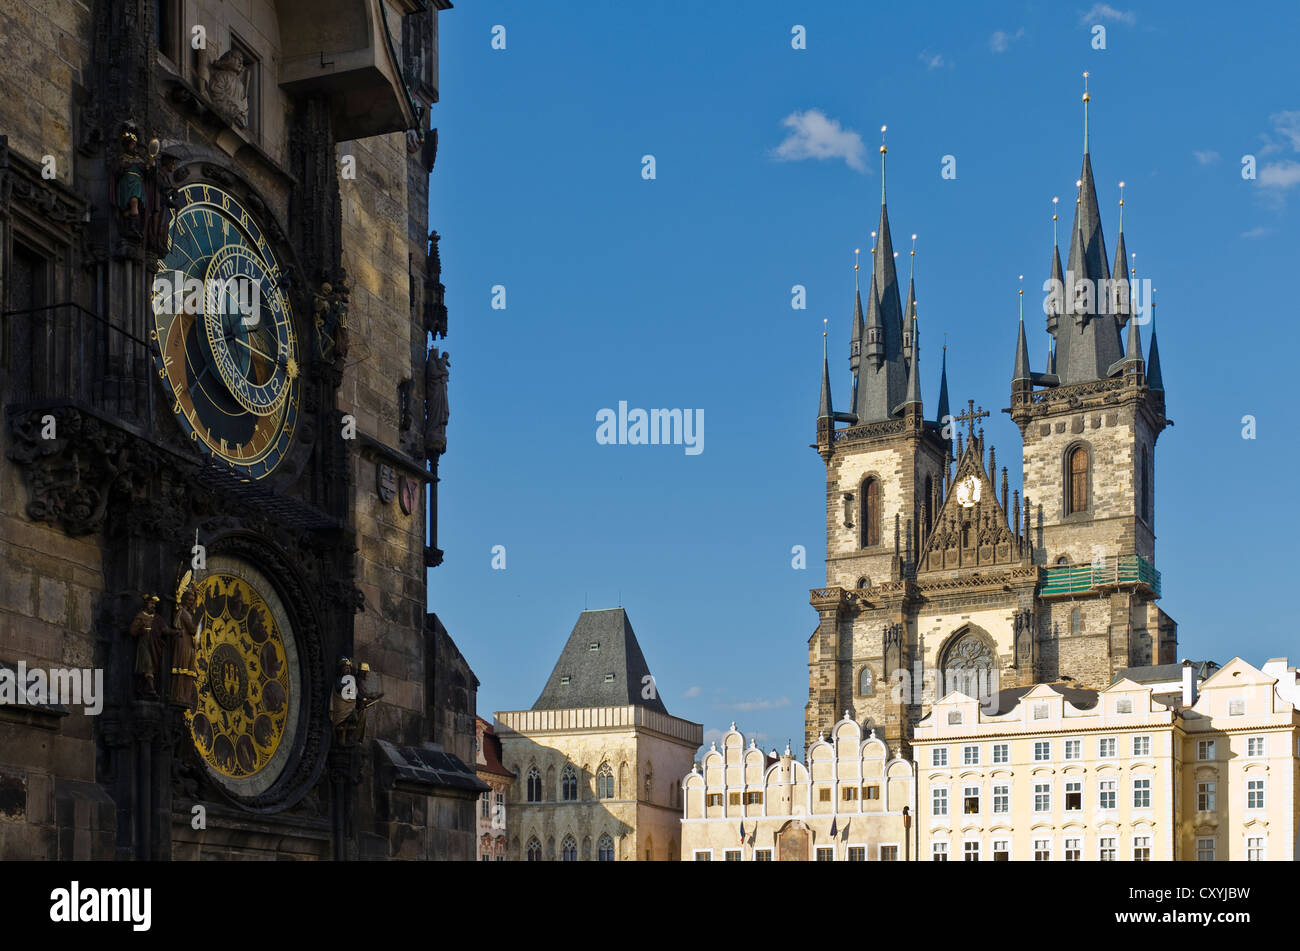 Prazsky orloj, l'horloge astronomique de Prague's town hall, avec les tours de Tynsky chram, l'église Tyn, Prague Banque D'Images